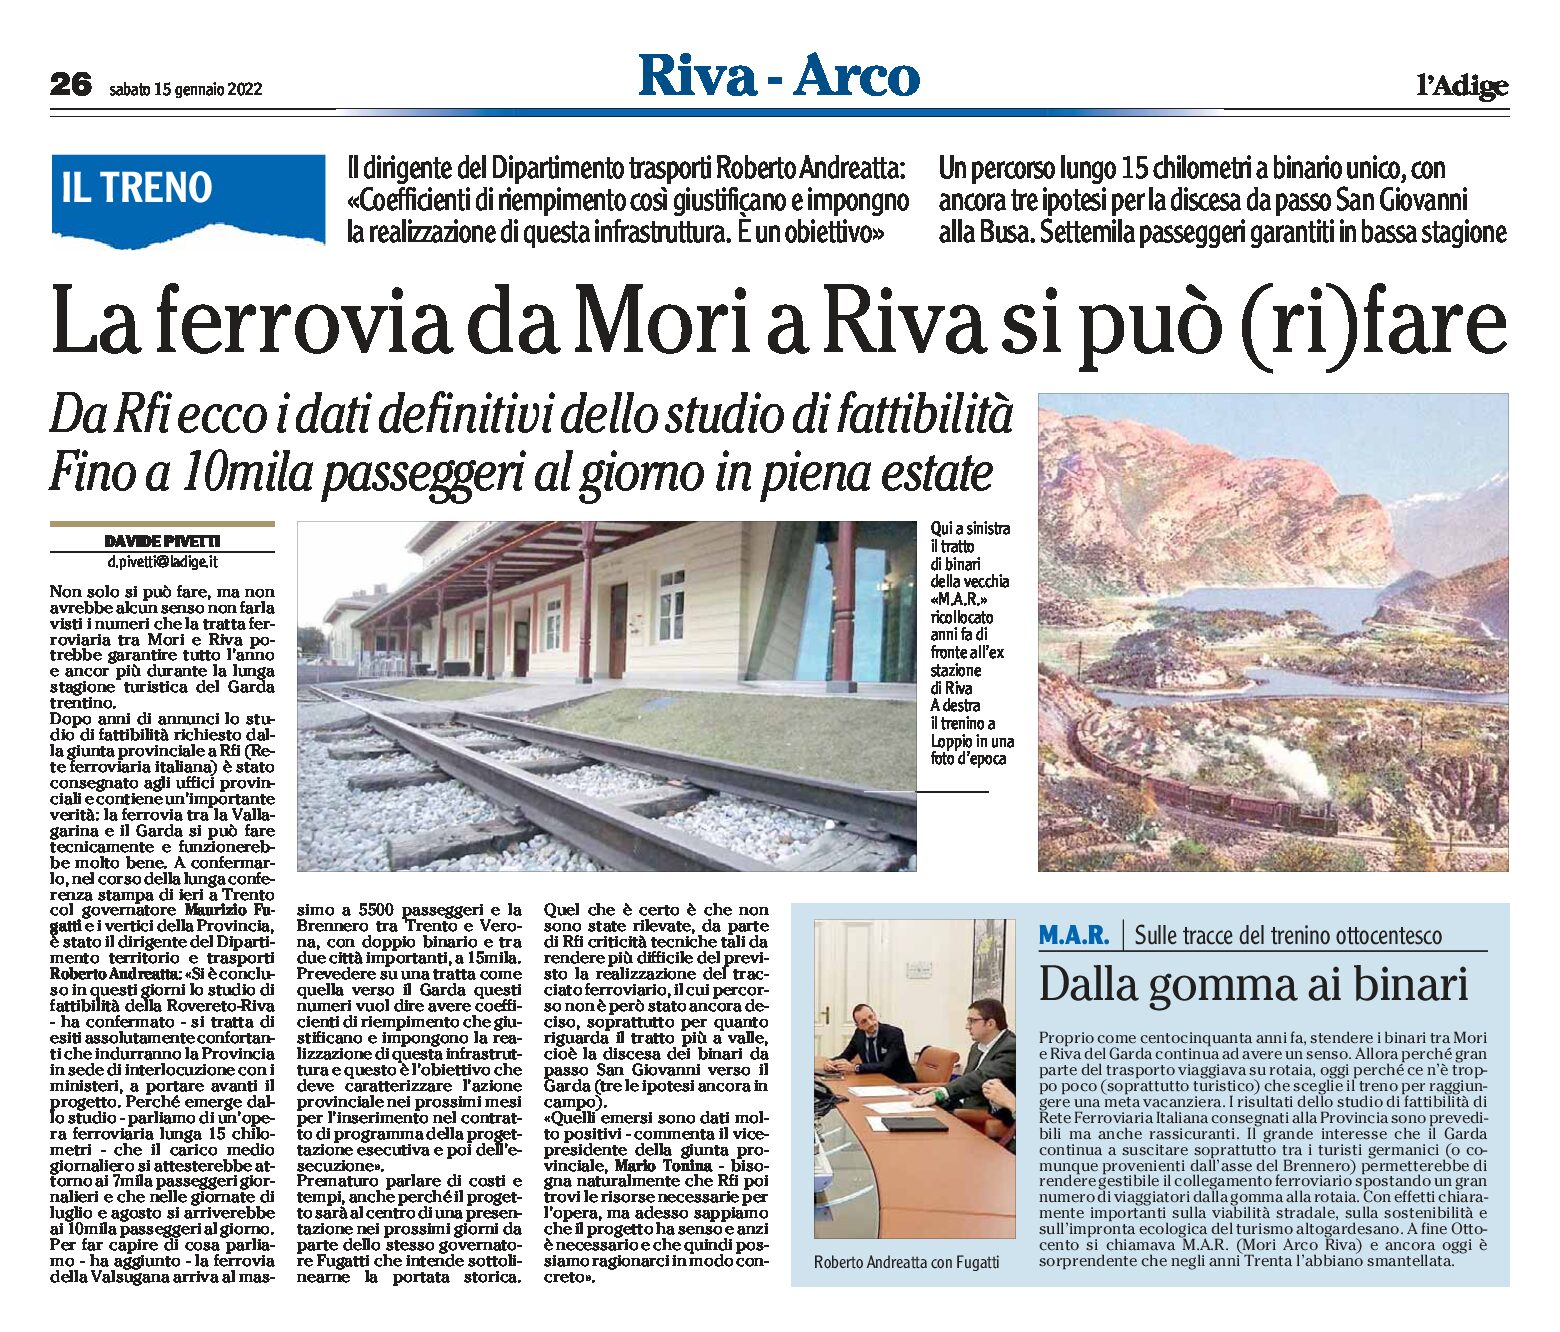 Ferrovia da Mori a Riva: si può (ri)fare